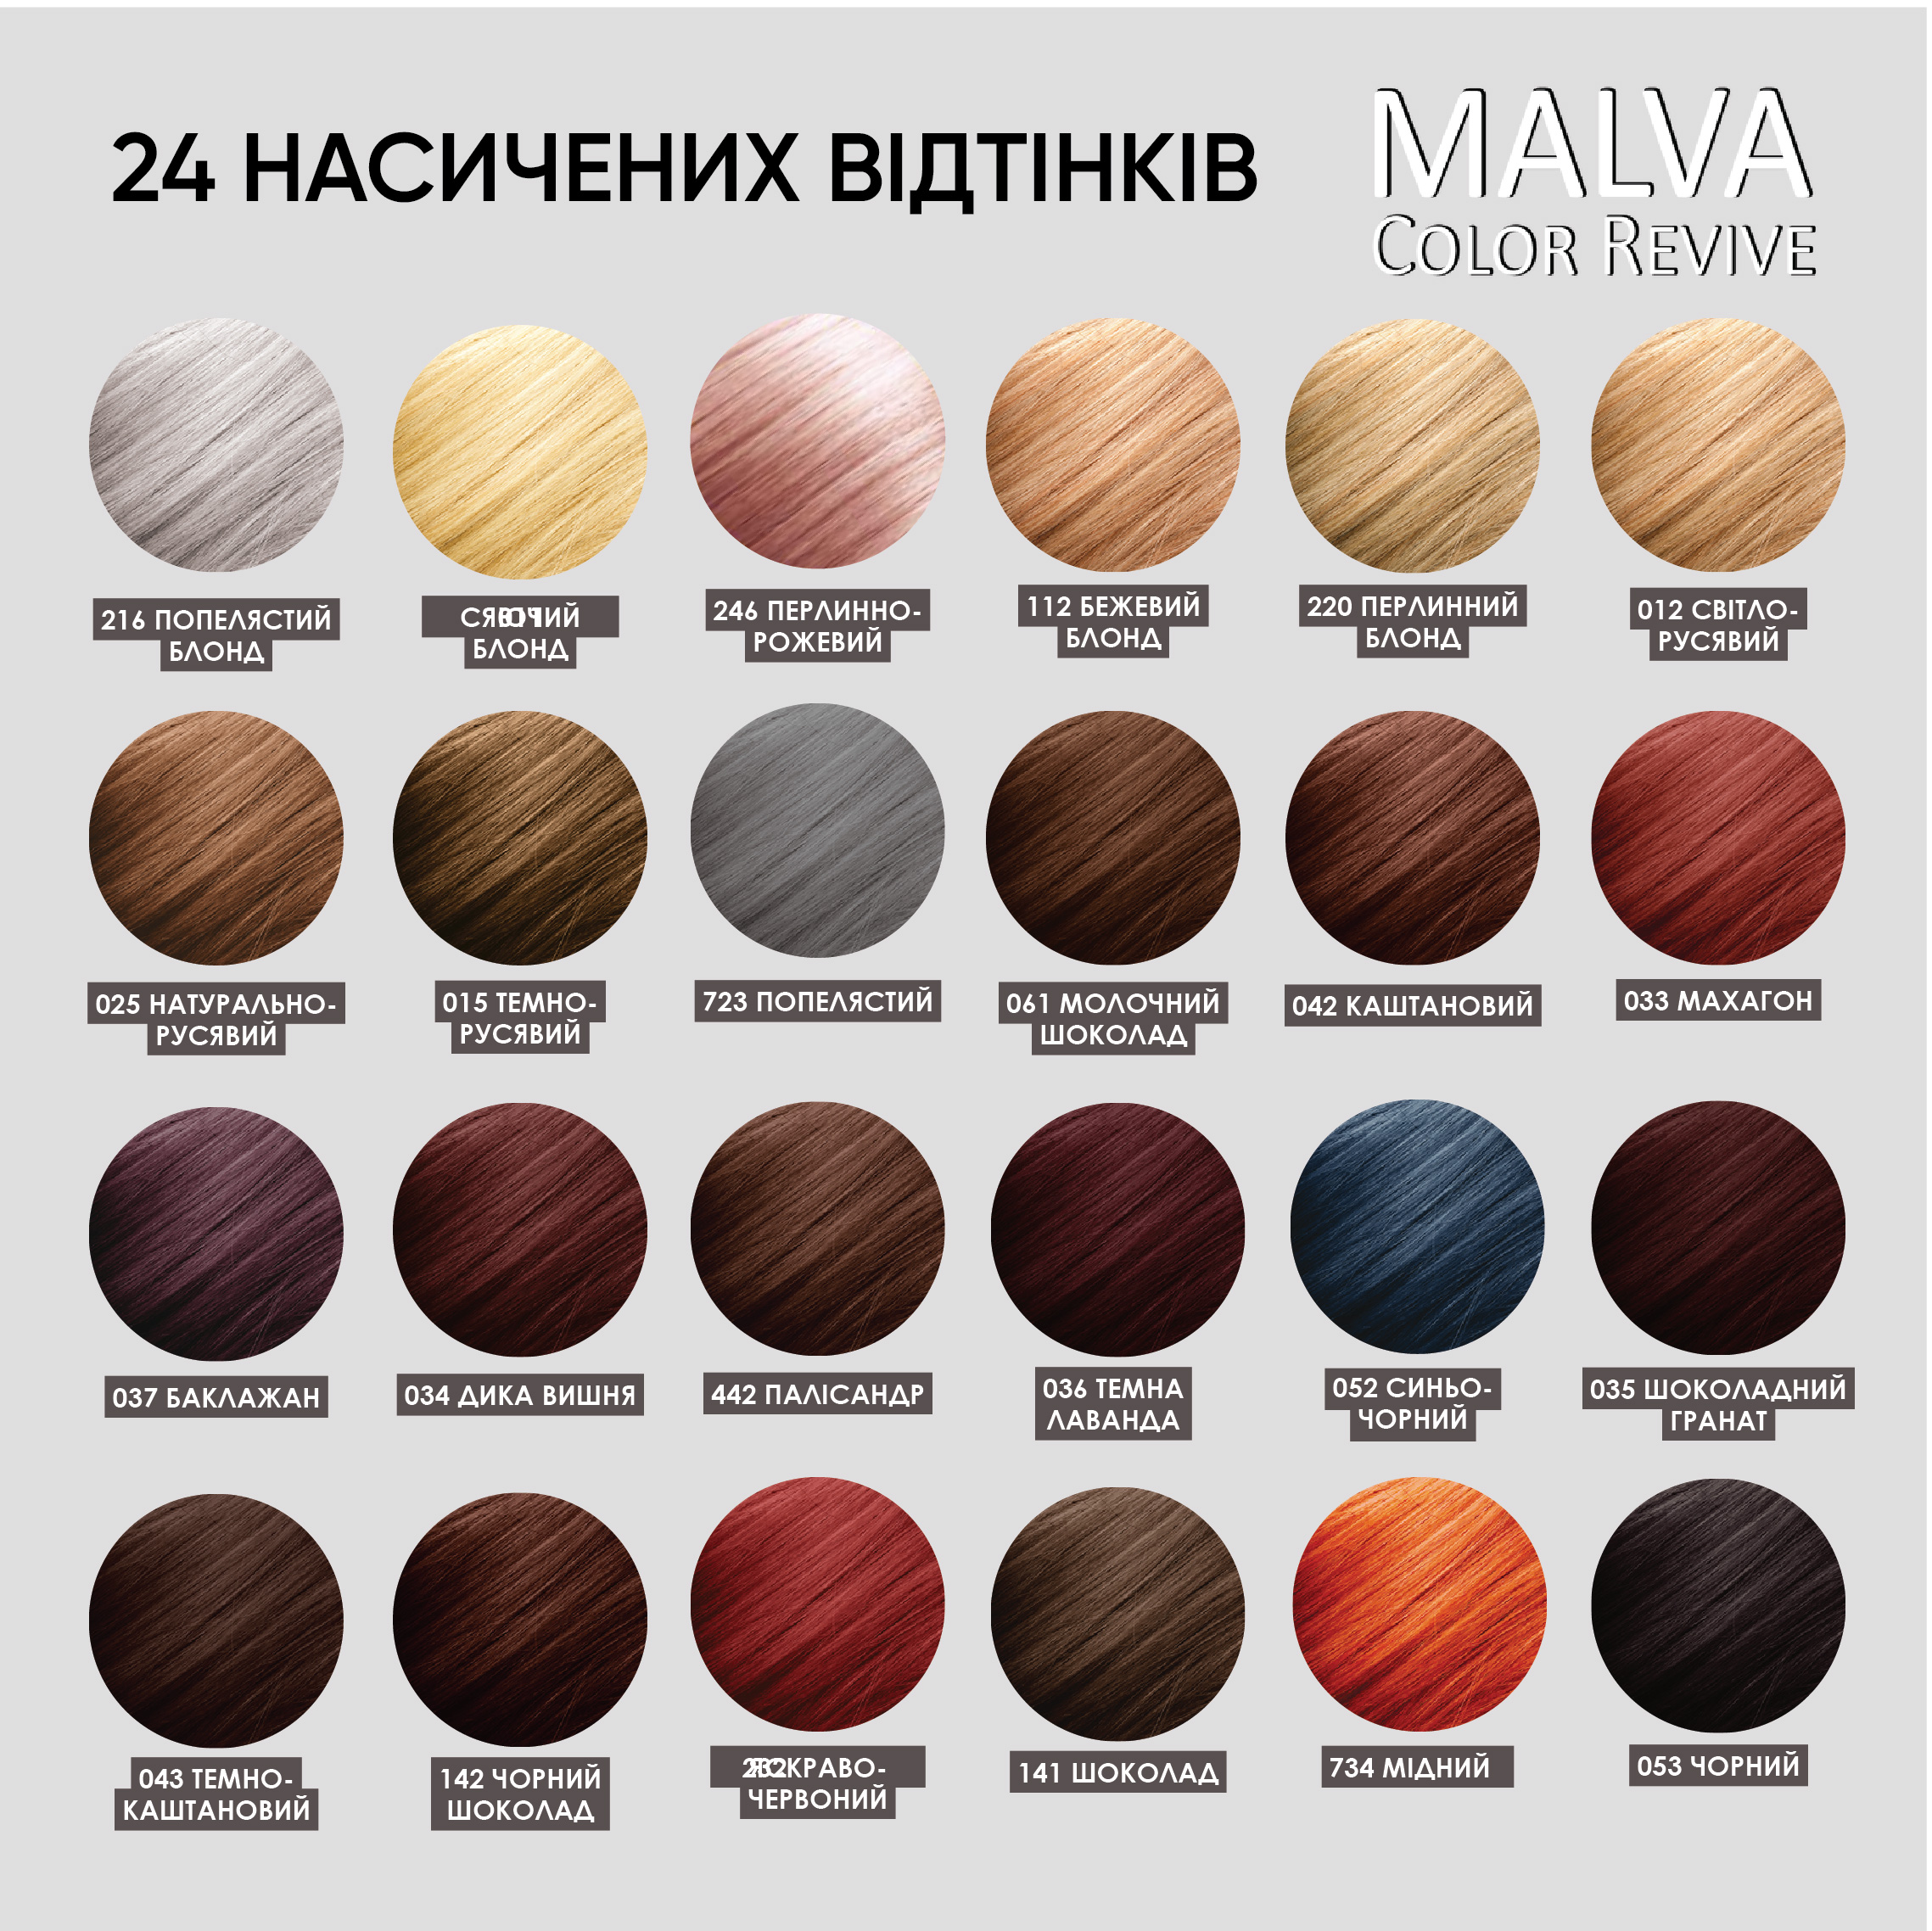 Устойчивая крем-краска для волос Malva Color Revive оттенок 141 Шоколад - фото 6